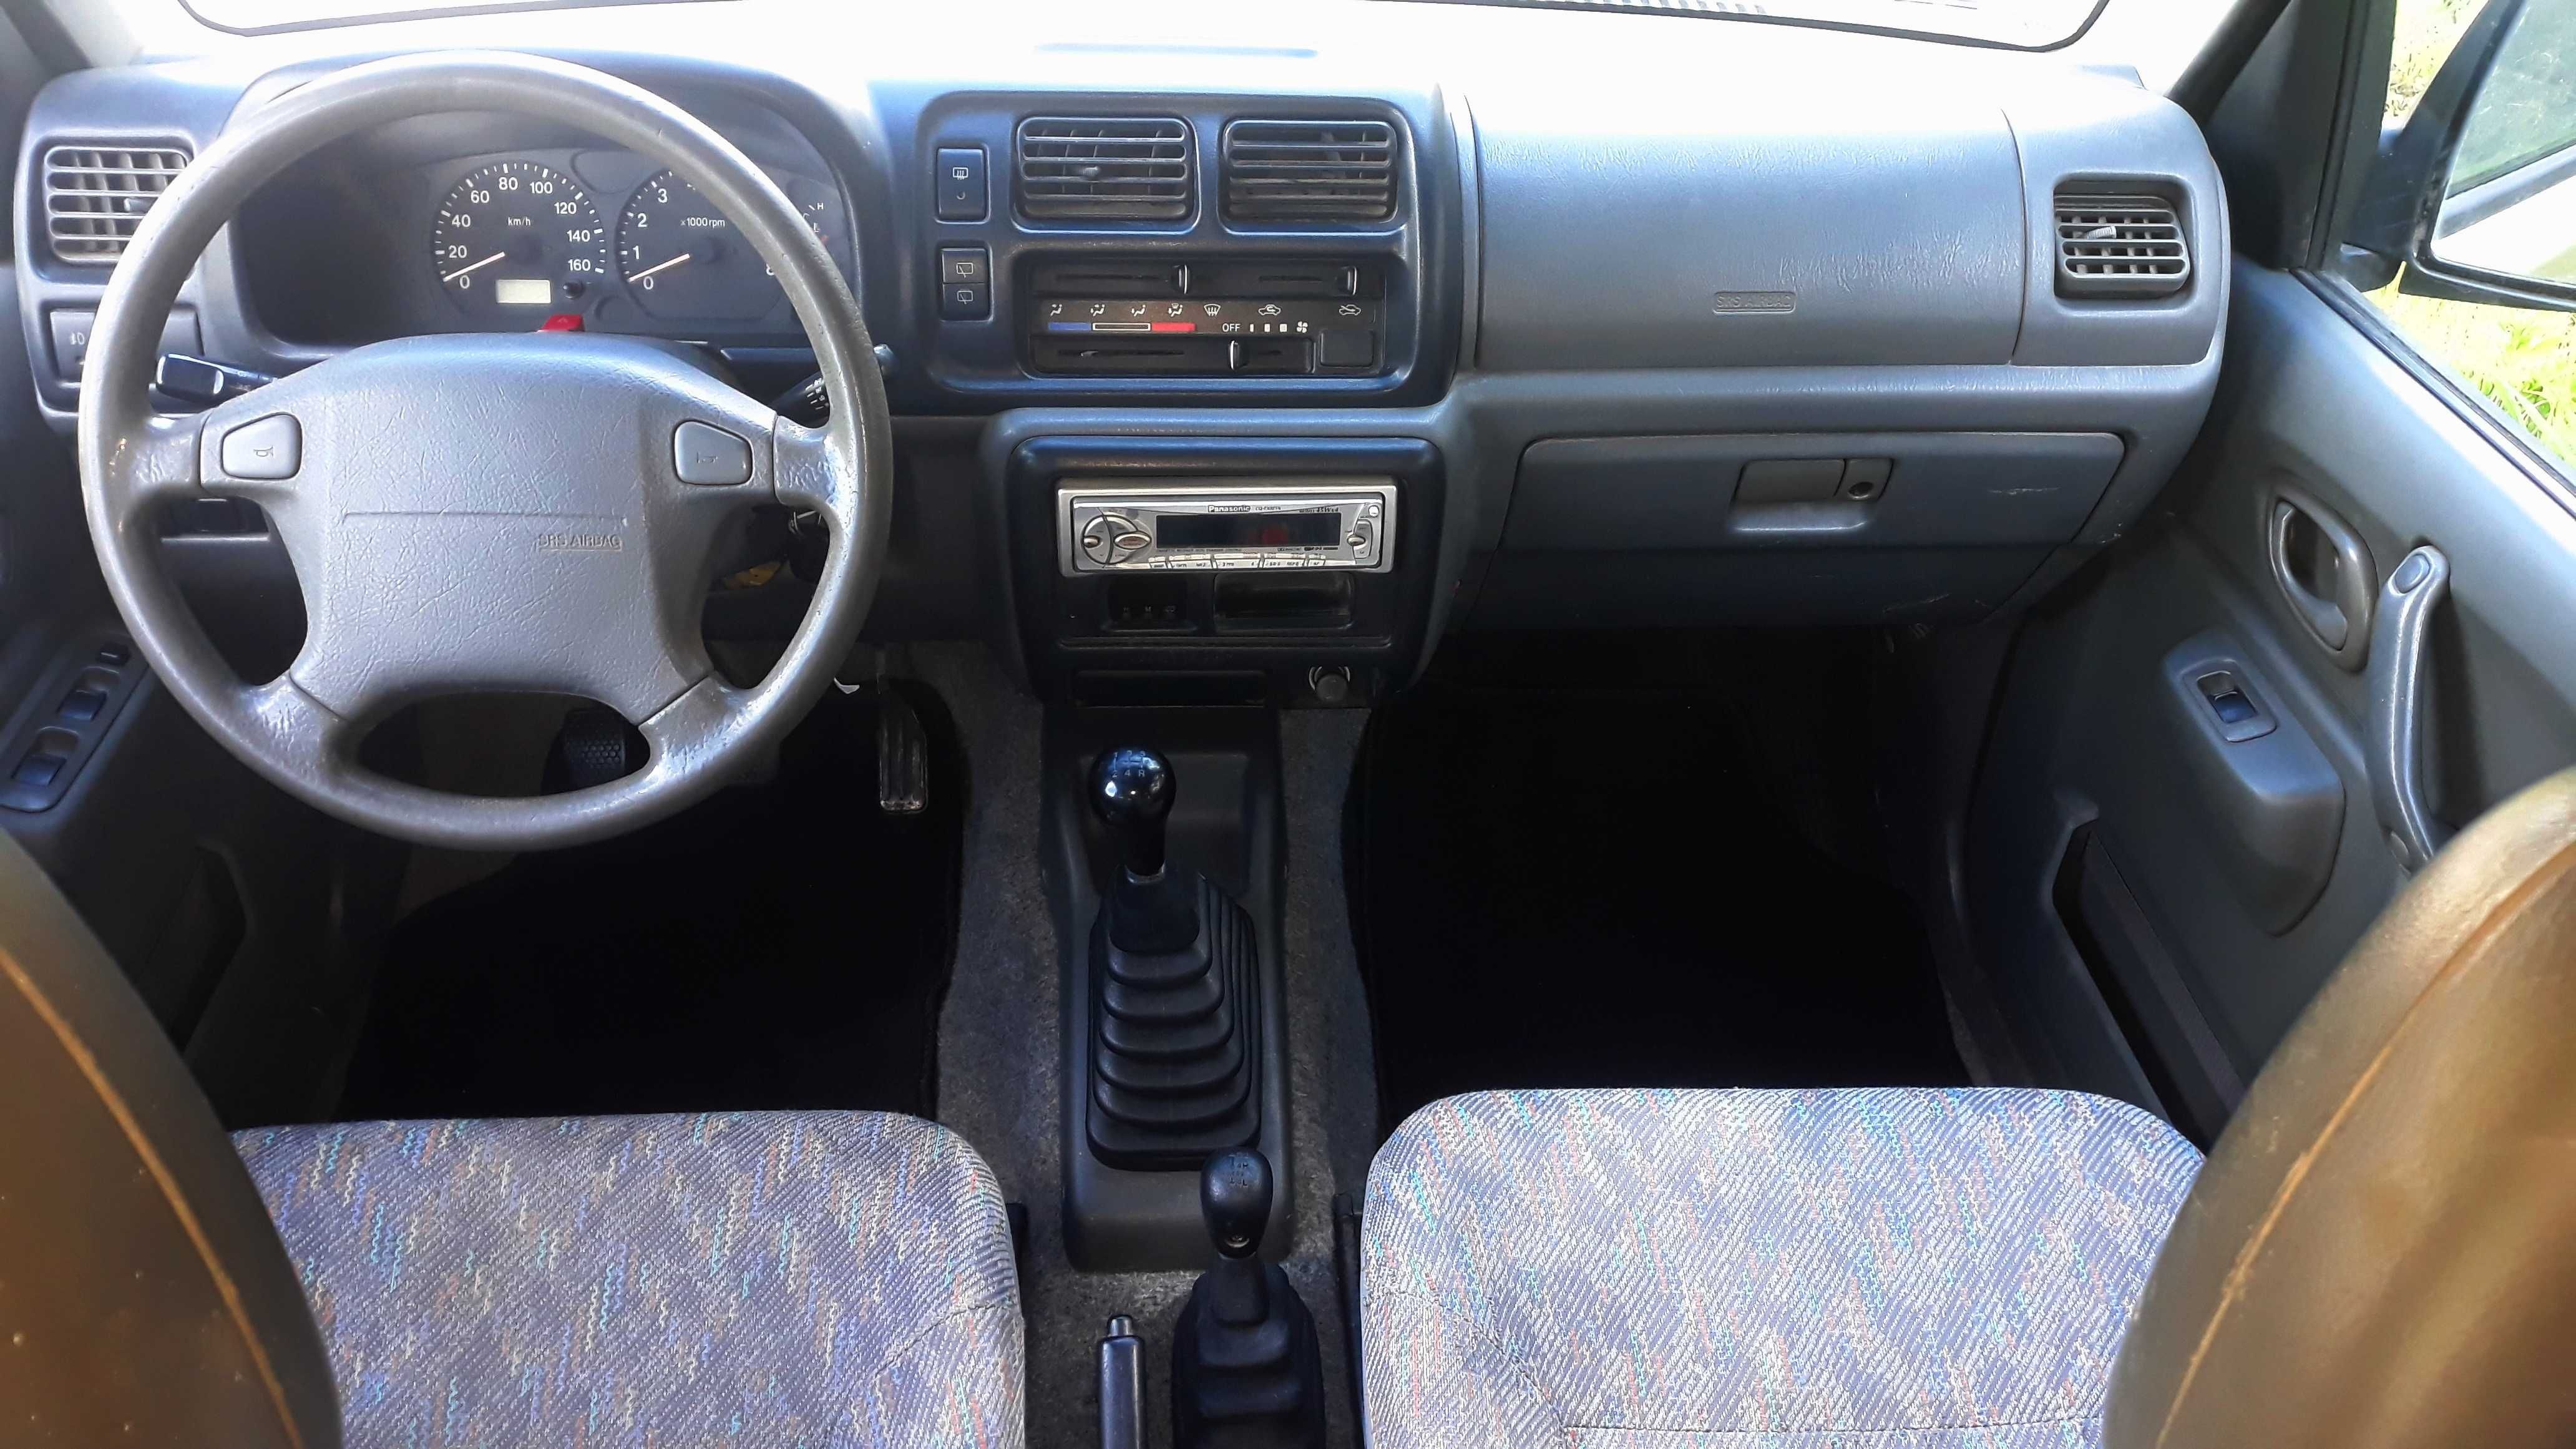 Suzuki Jimny 1999 1.3 16v 82cv